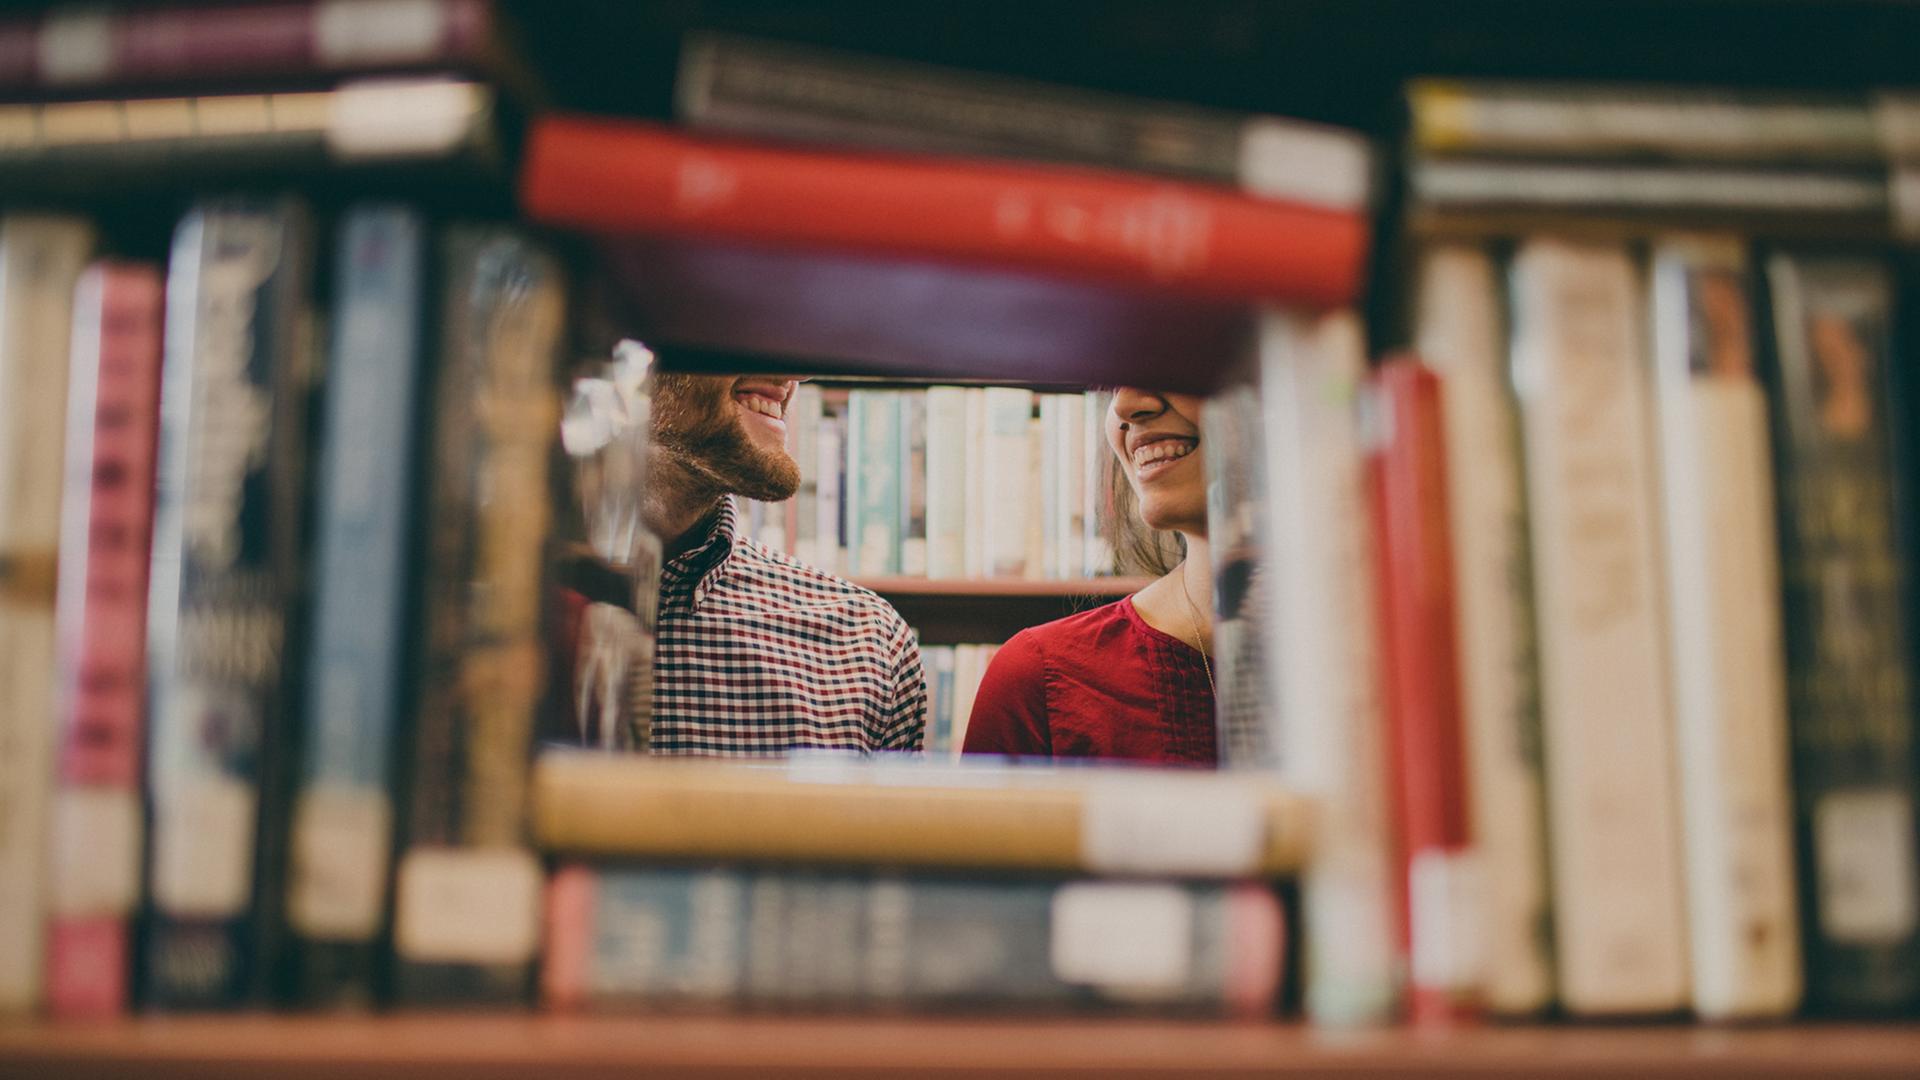 Ein Mann und eine Frau stehen zwischen Bücherregalen und lächeln sich an.